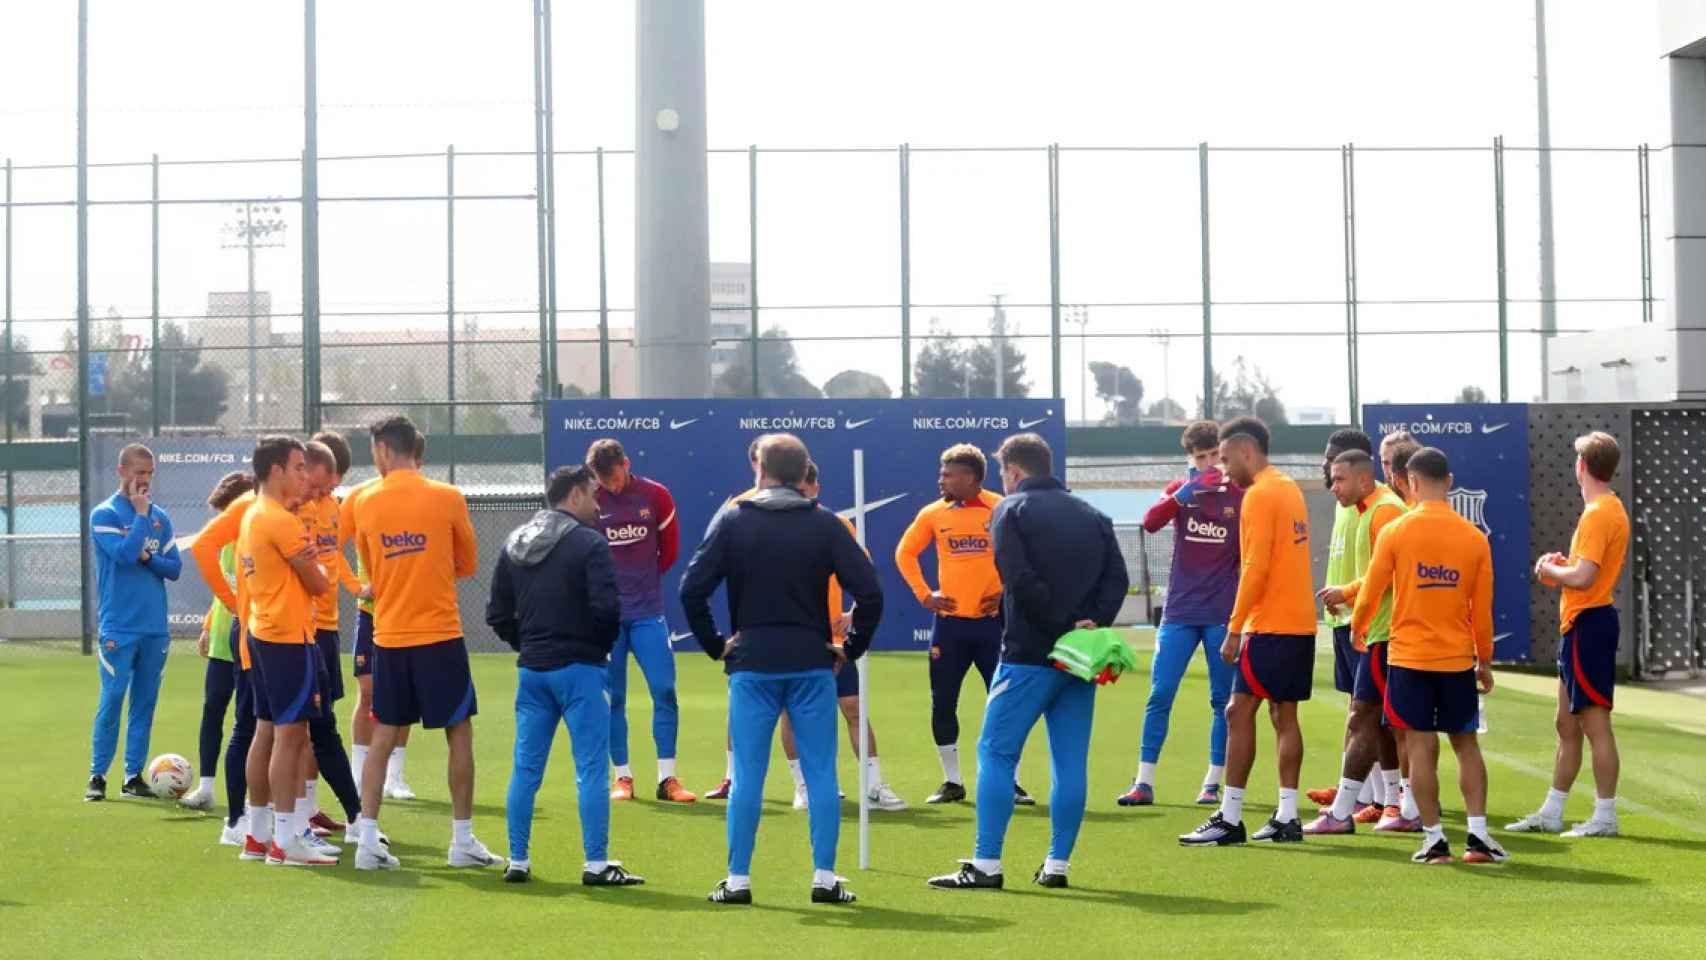 El Barça de Xavi, en una sesión de entrenamiento, en la Ciutat Esportiva Joan Gamper / FCB